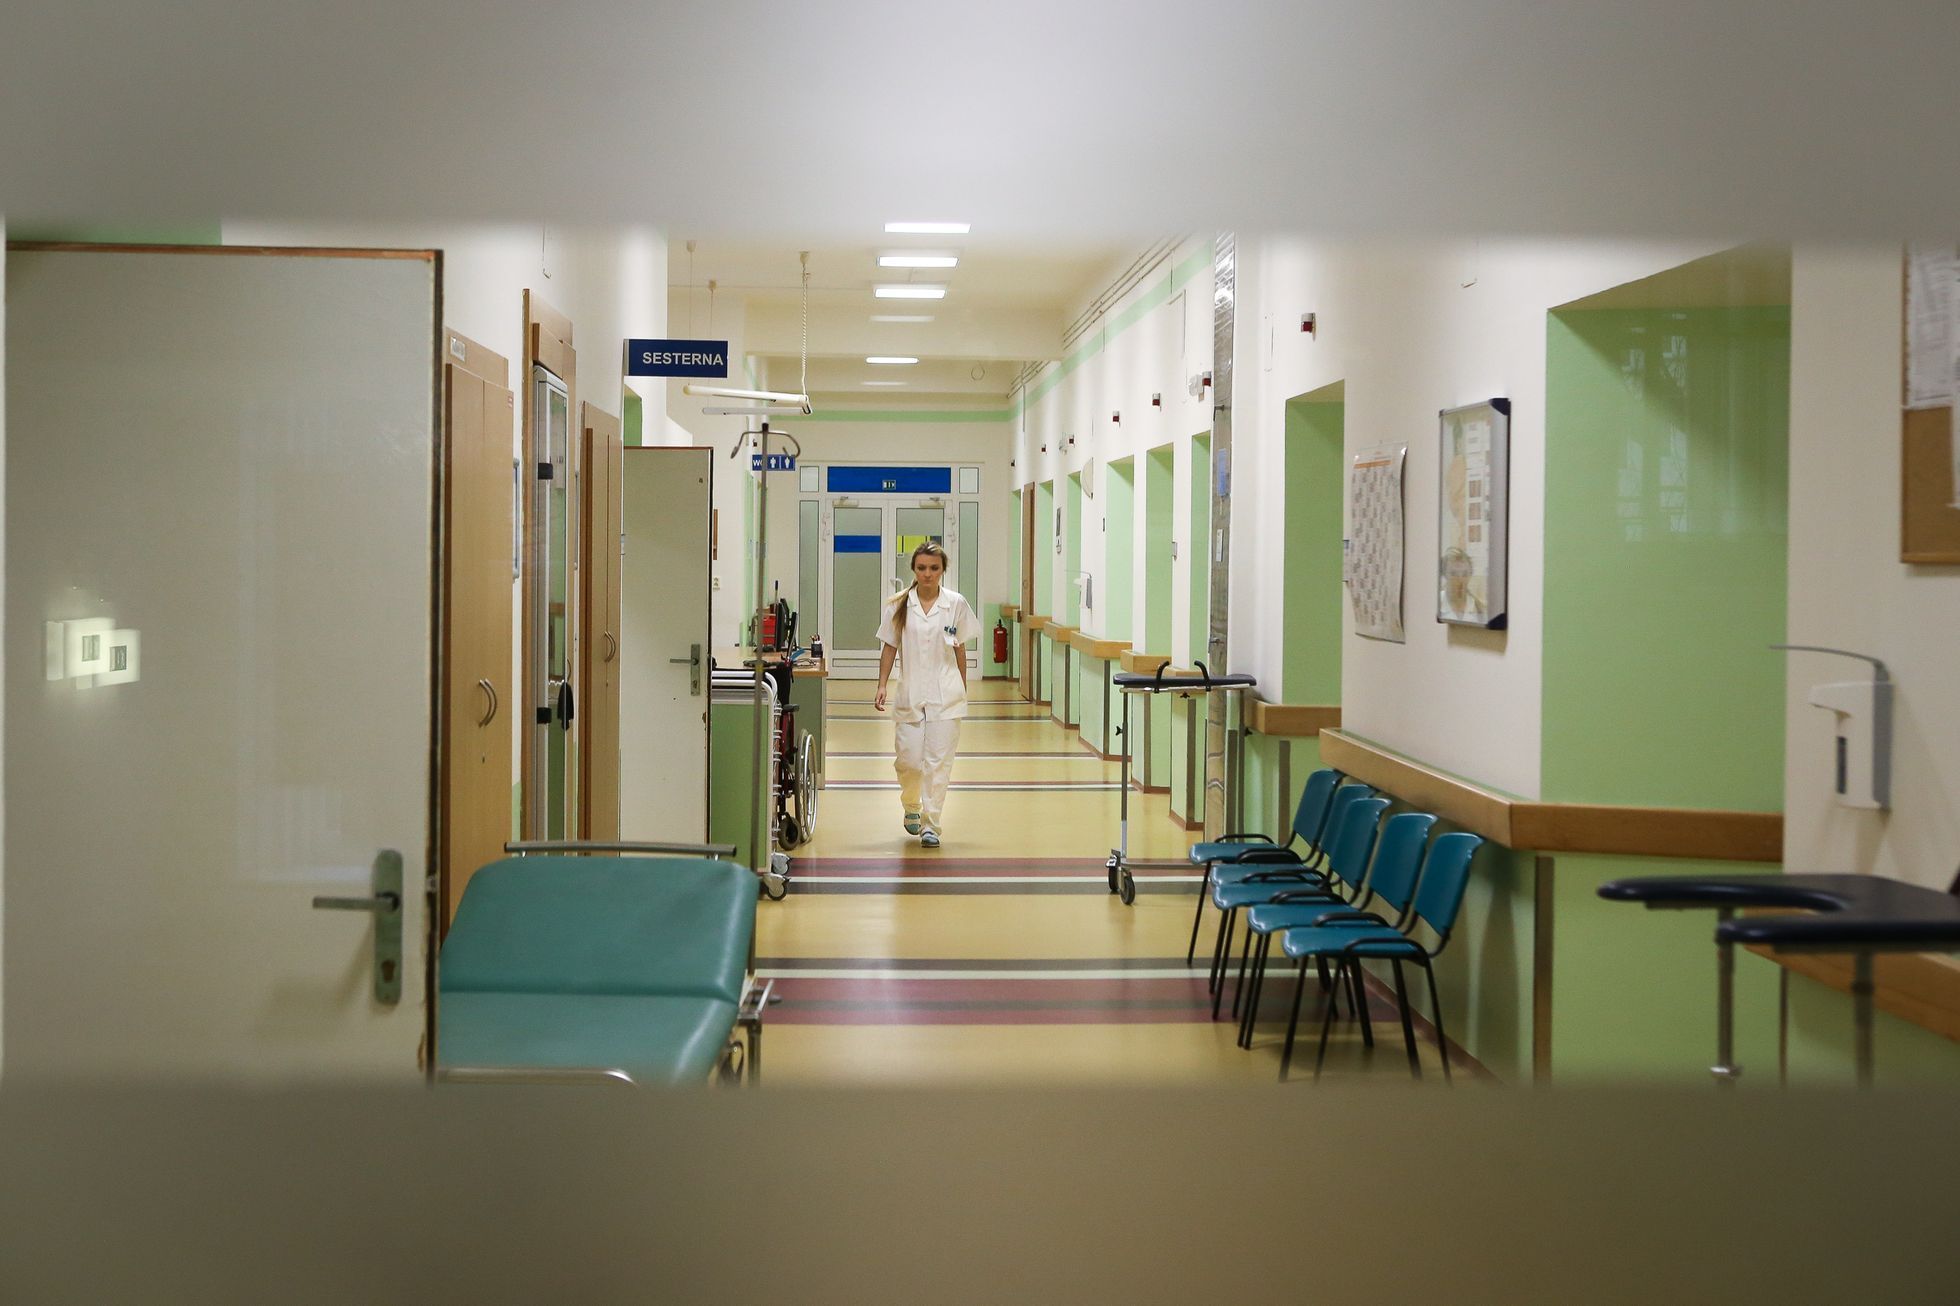 Noční služba v liberecké nemocnici